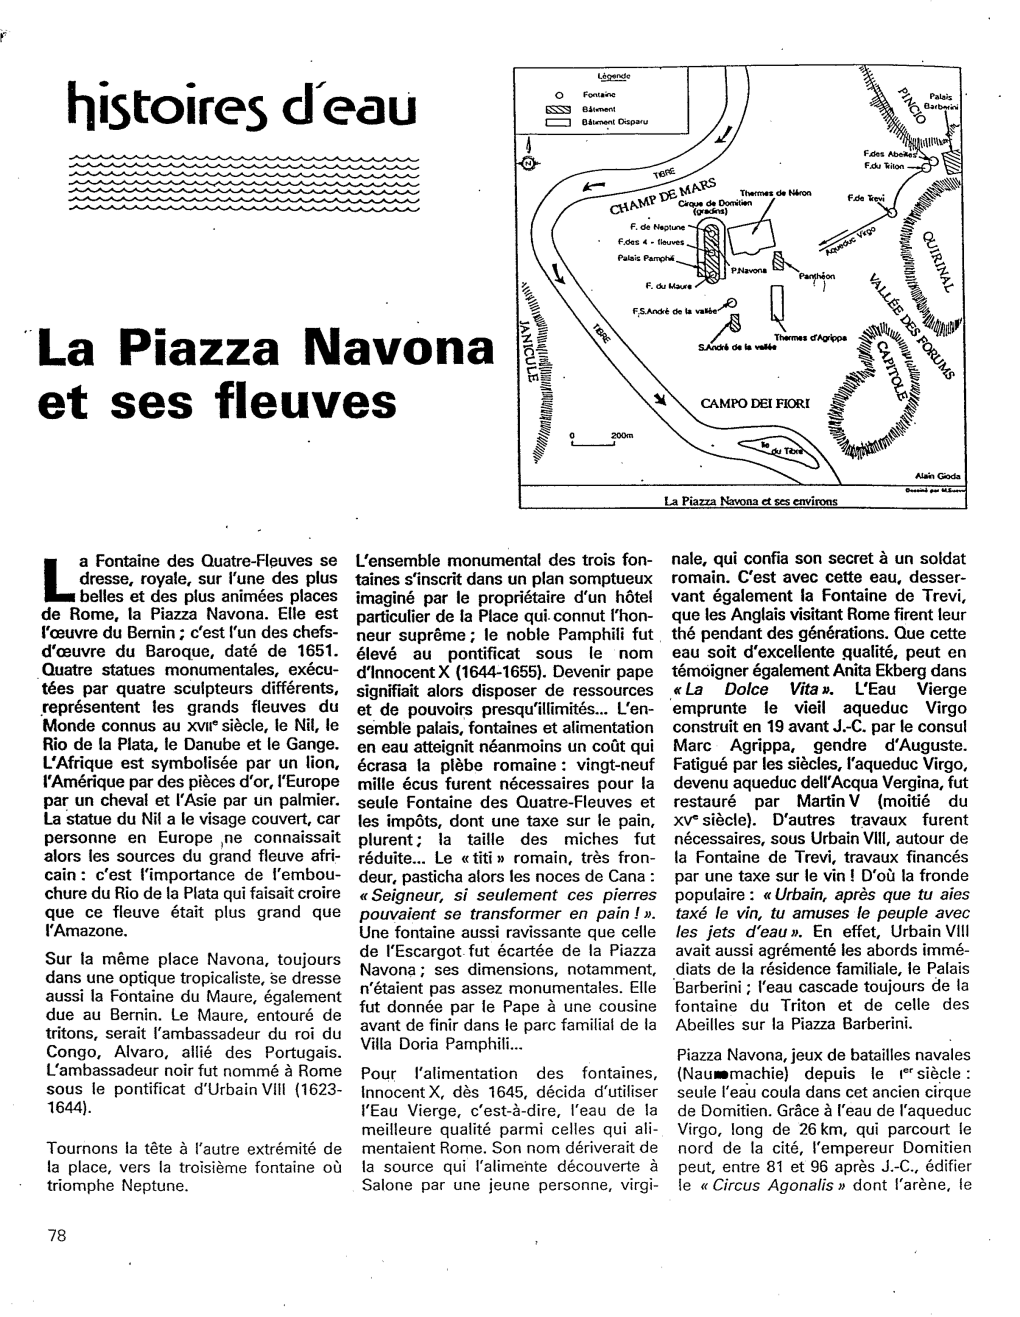 La Piazza Navona Et Ses Fleuves